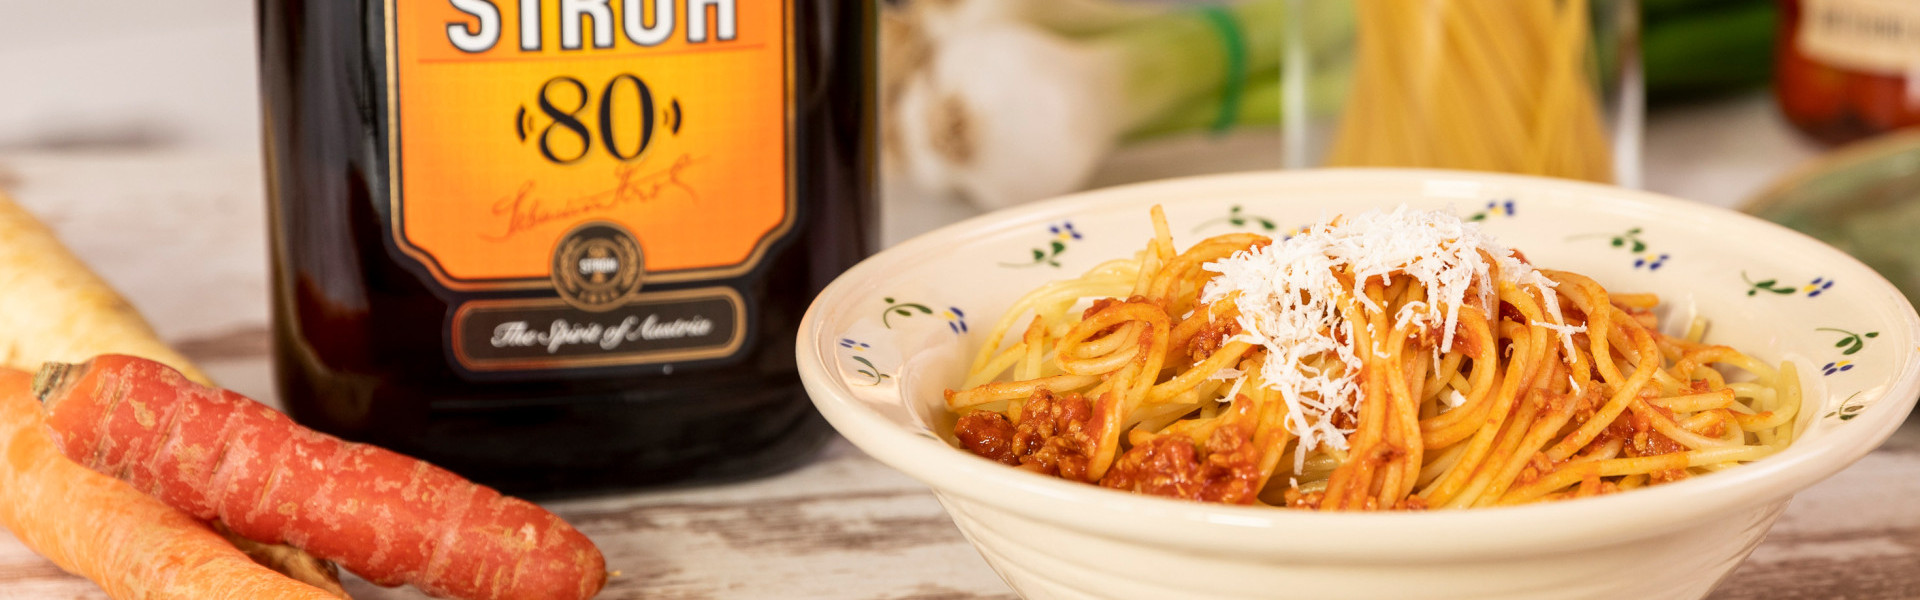 Spaghetti Bolognese mit STROH 80